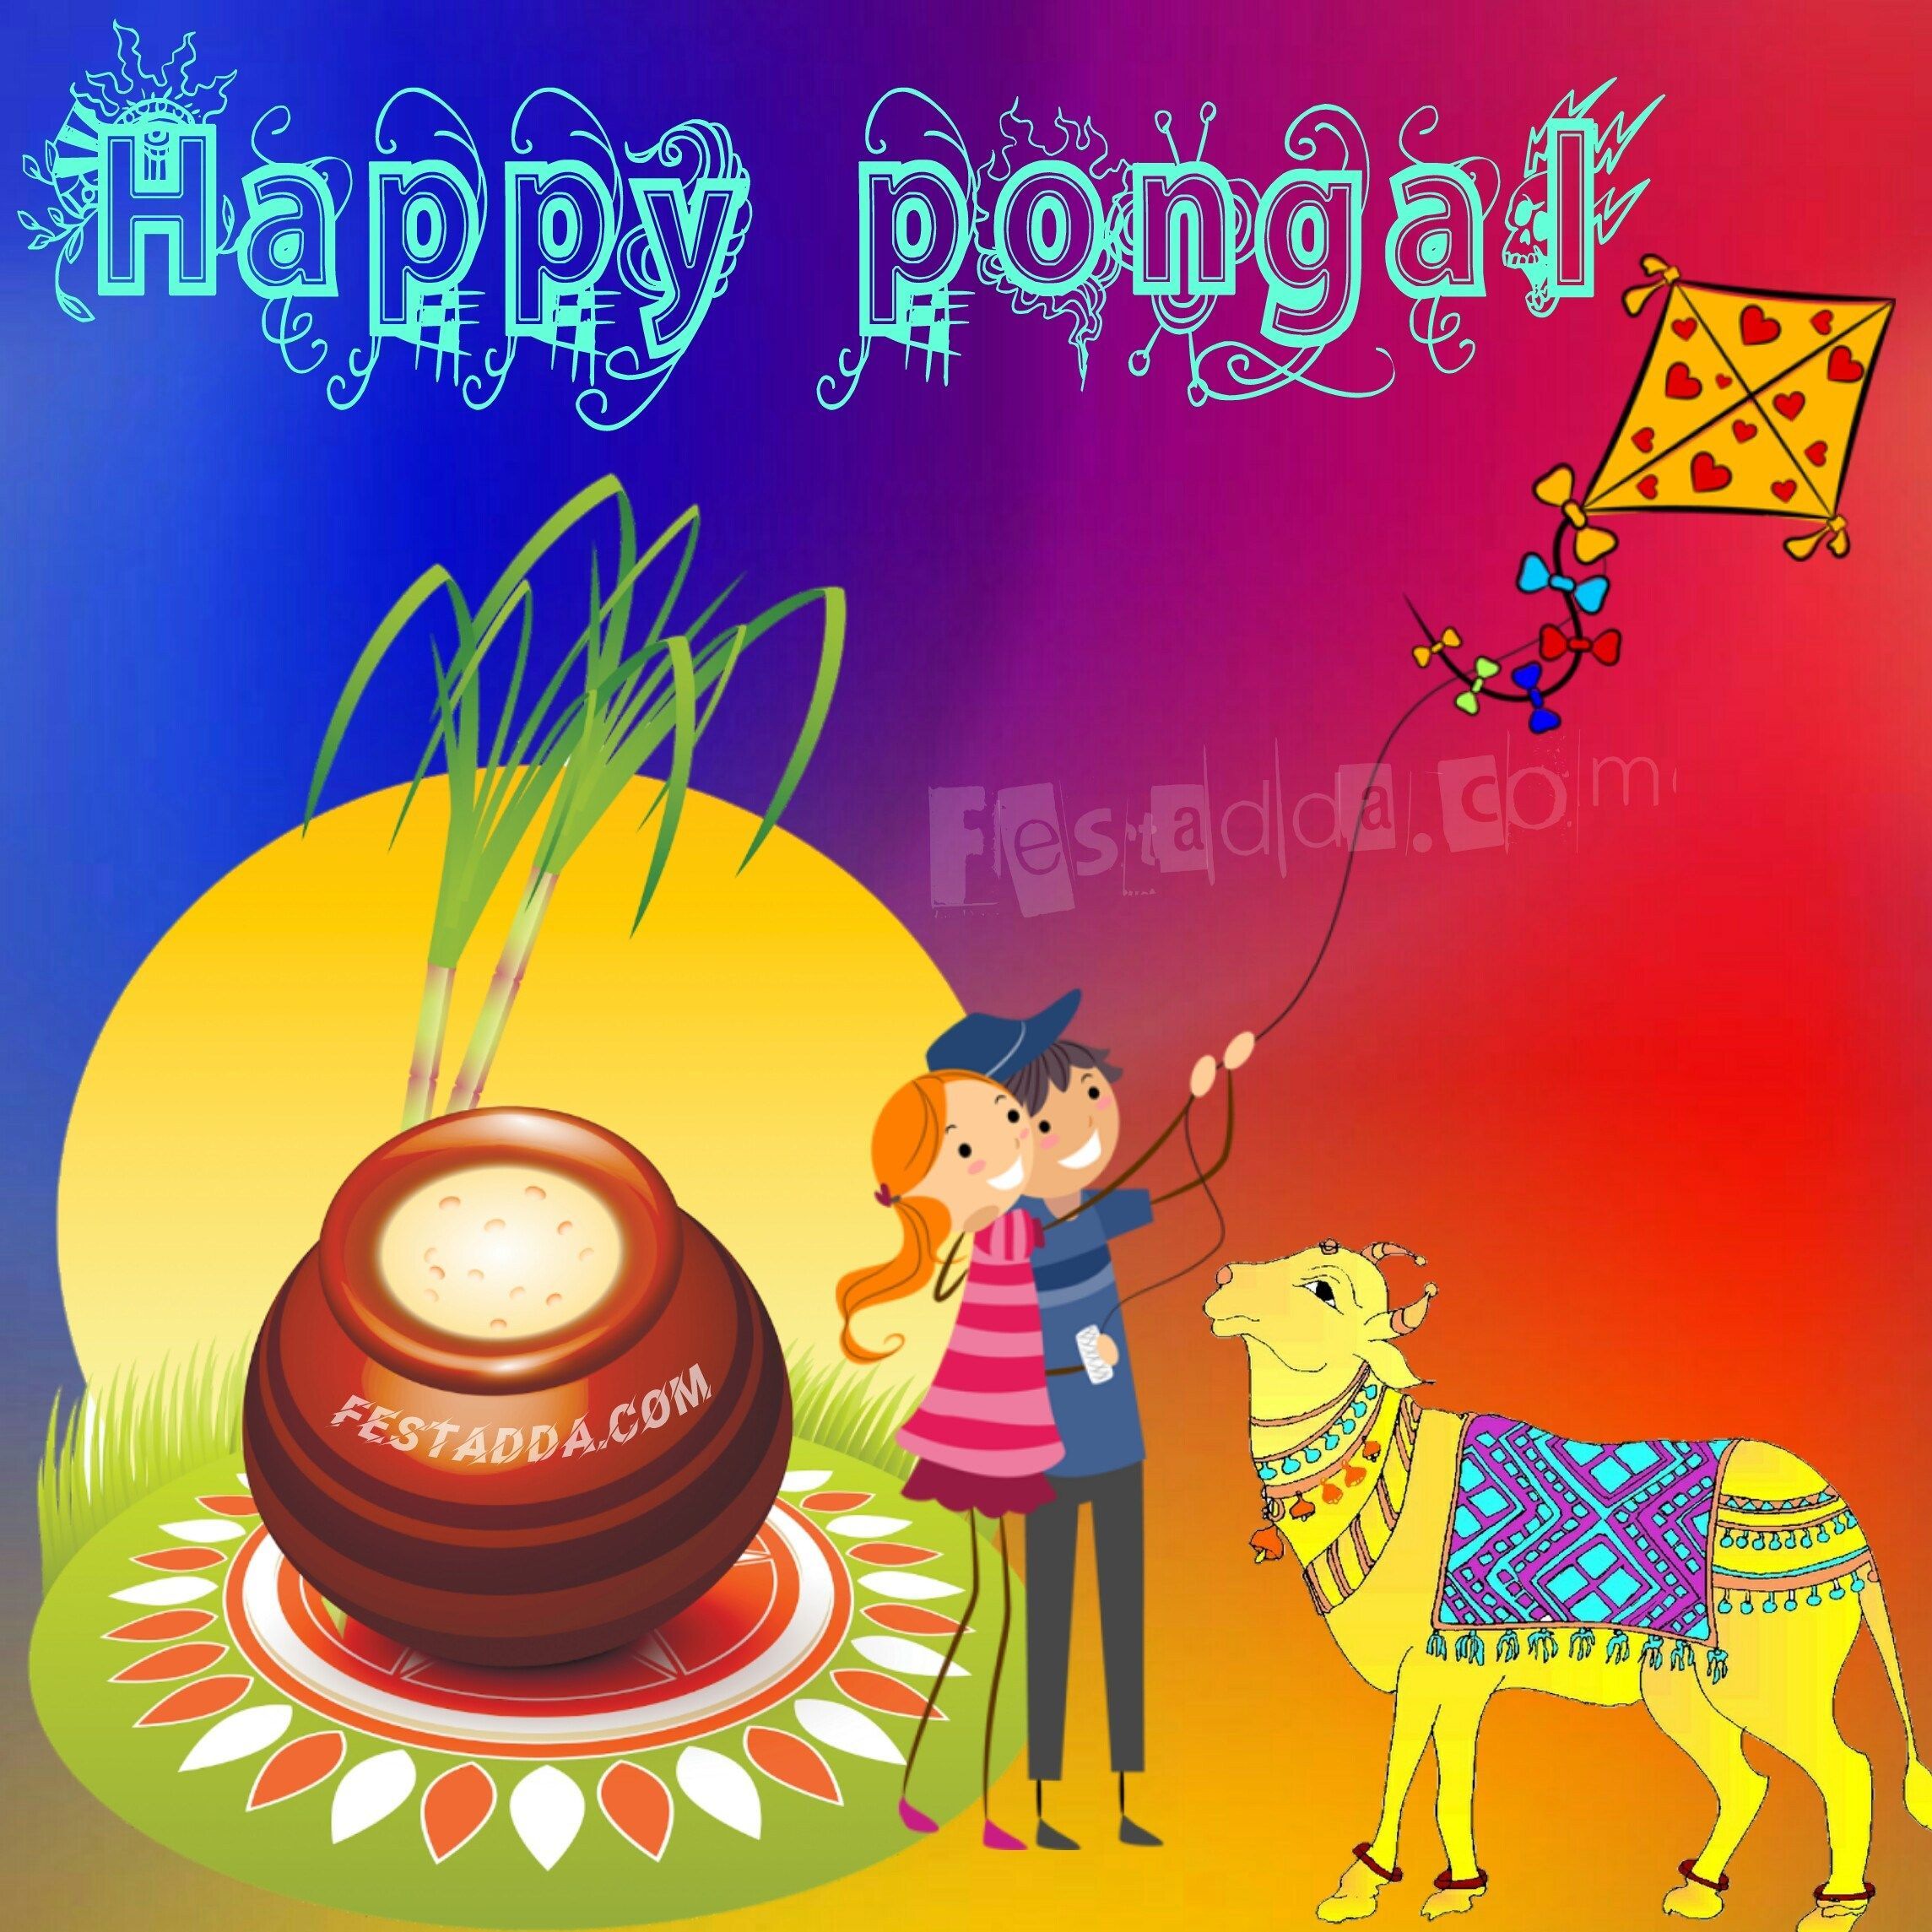 Happy Mattu Pongal Image. Happy pongal wishes, Happy pongal, Wishes image